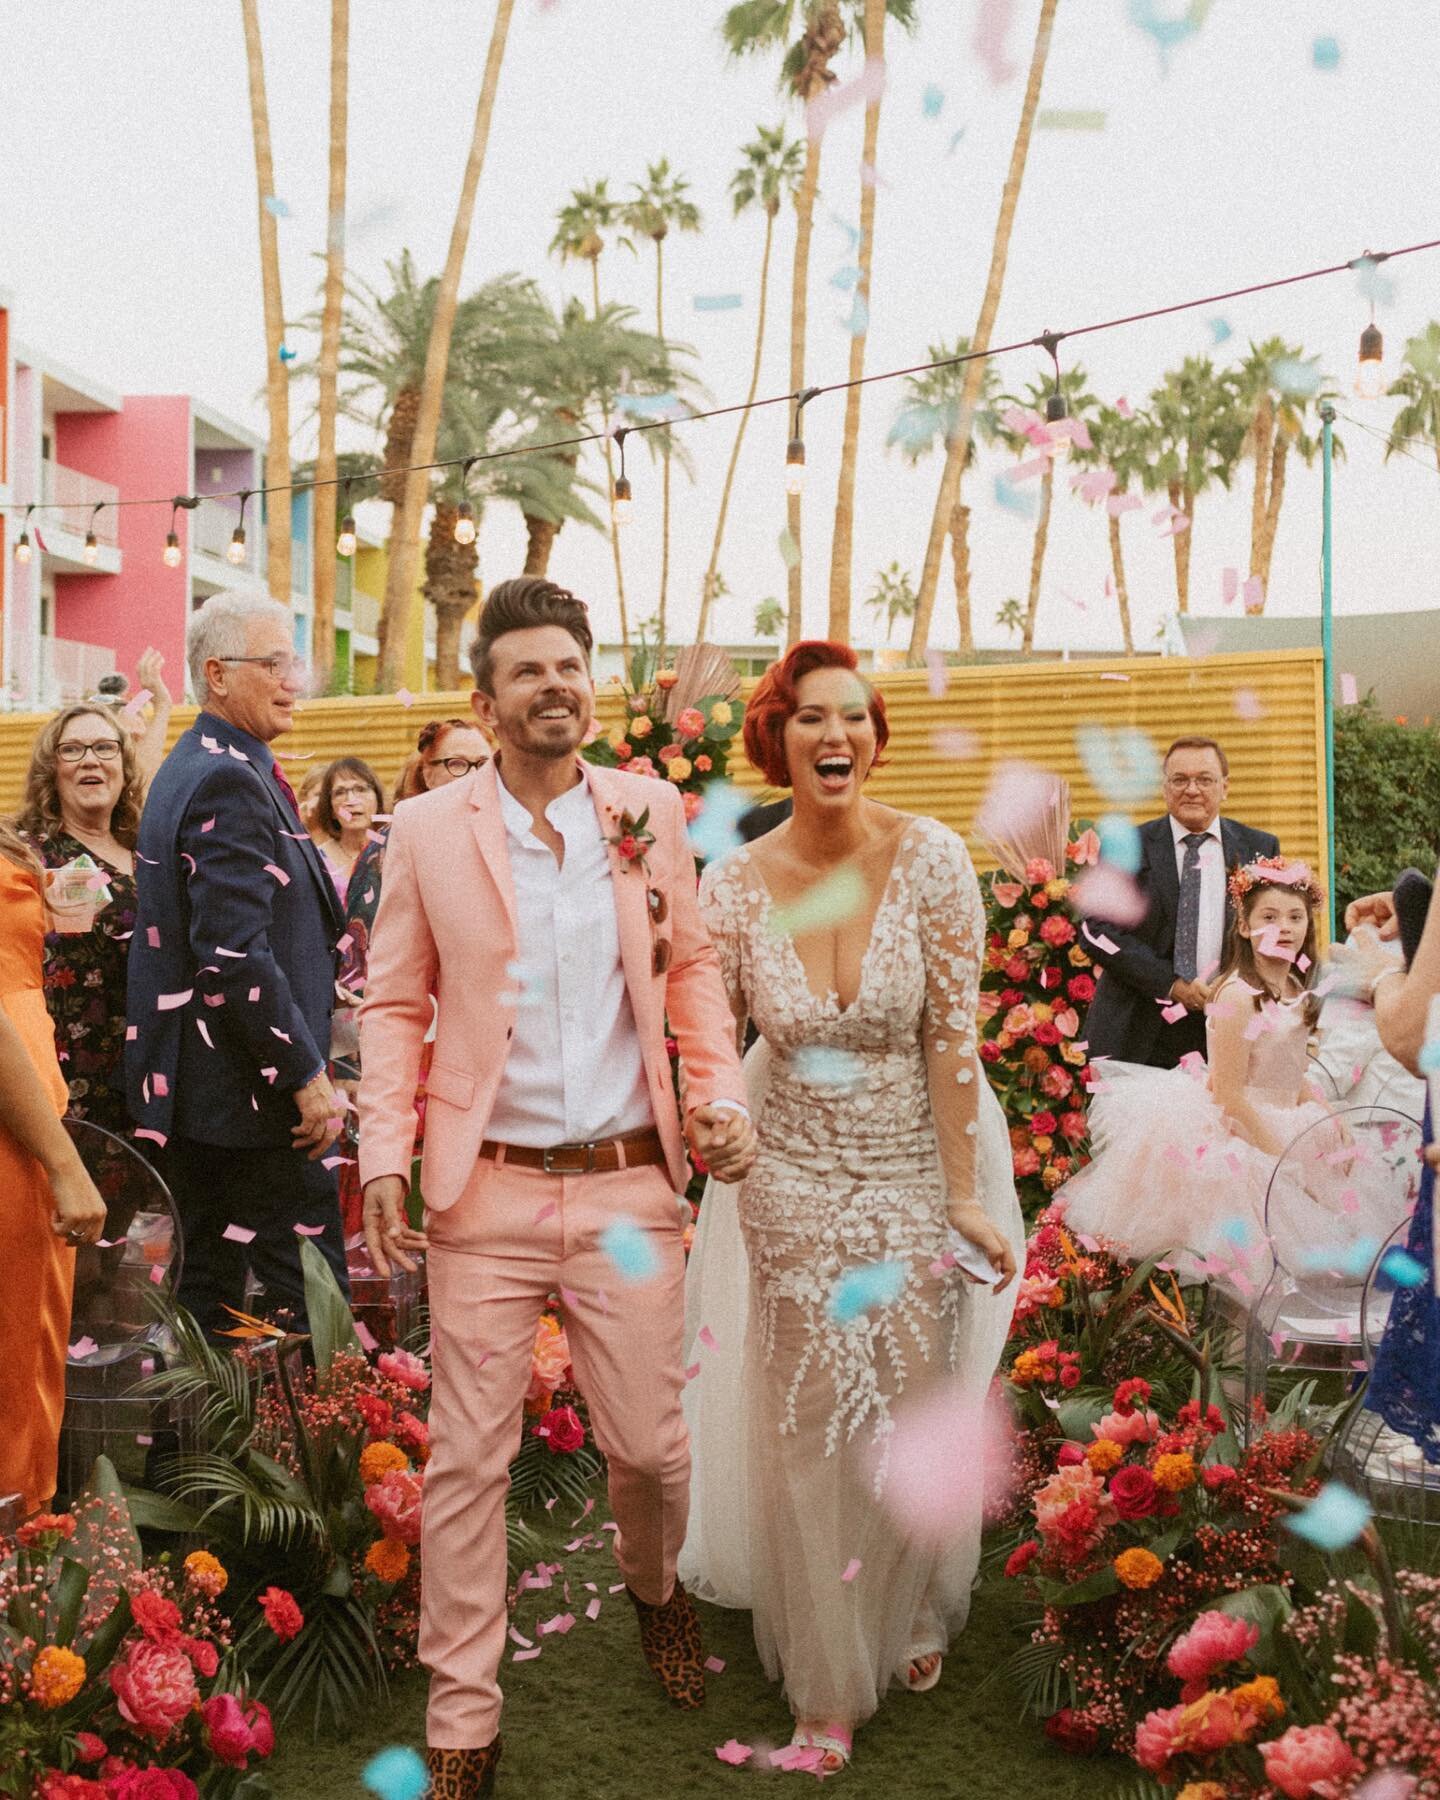 We love a happily ever after.

#palmspringsweddings #saguarohotel #desertweddinginspo #colorfulwedding